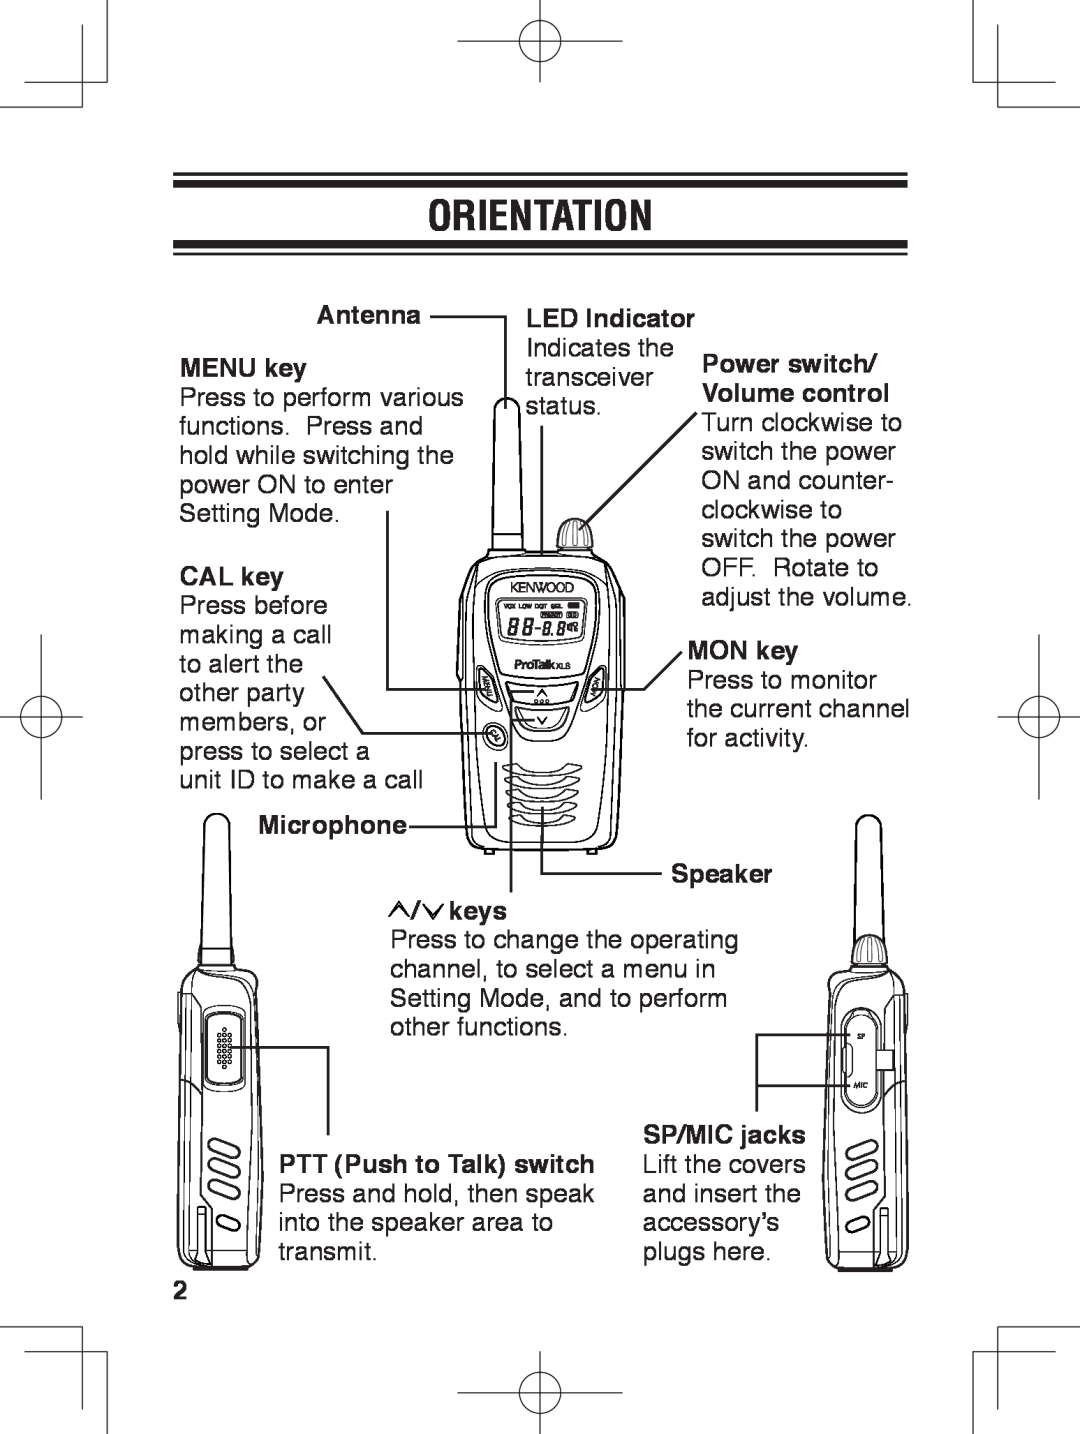 Kenwood TK-3230 instruction manual Orientation 